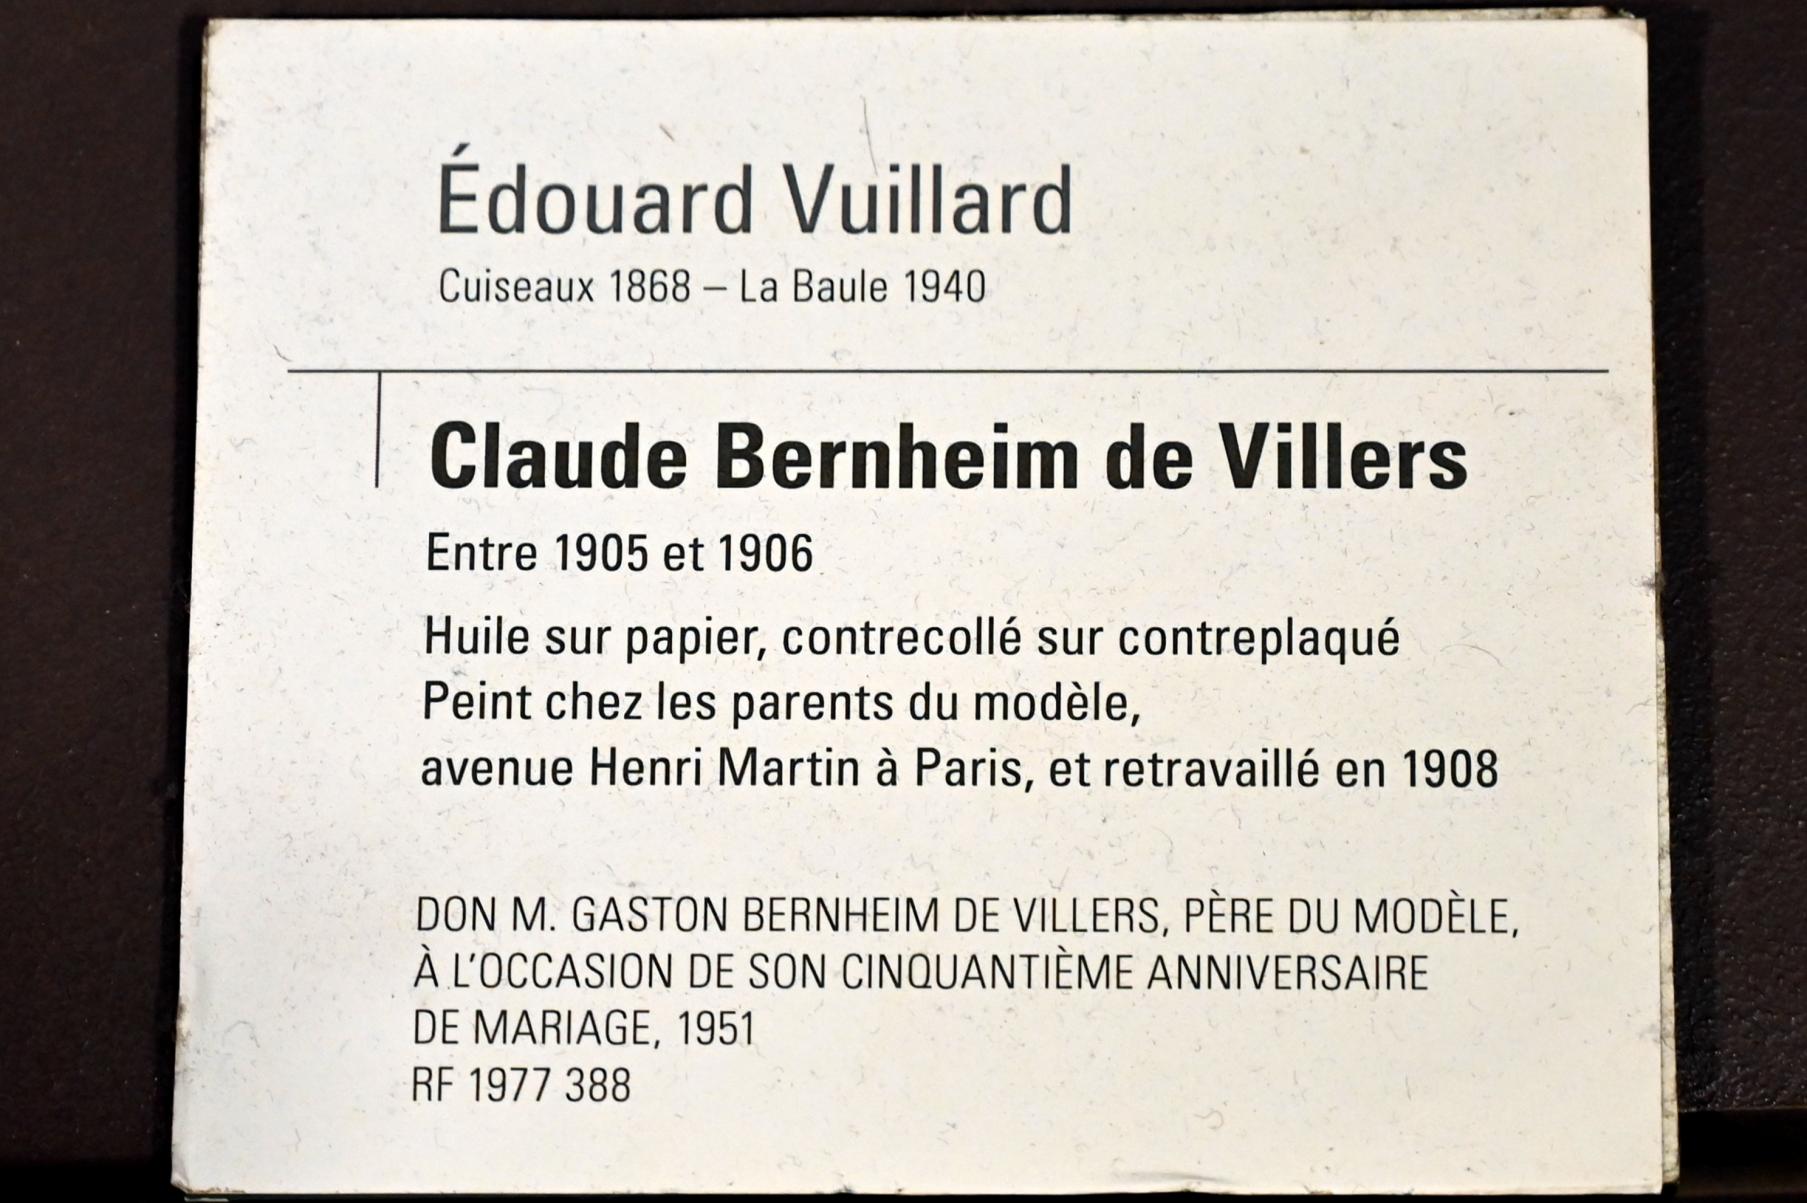 Édouard Vuillard (1889–1939), Porträt des Claude Bernheim de Villers, Paris, Musée d’Orsay, 1905–1906, Bild 2/2